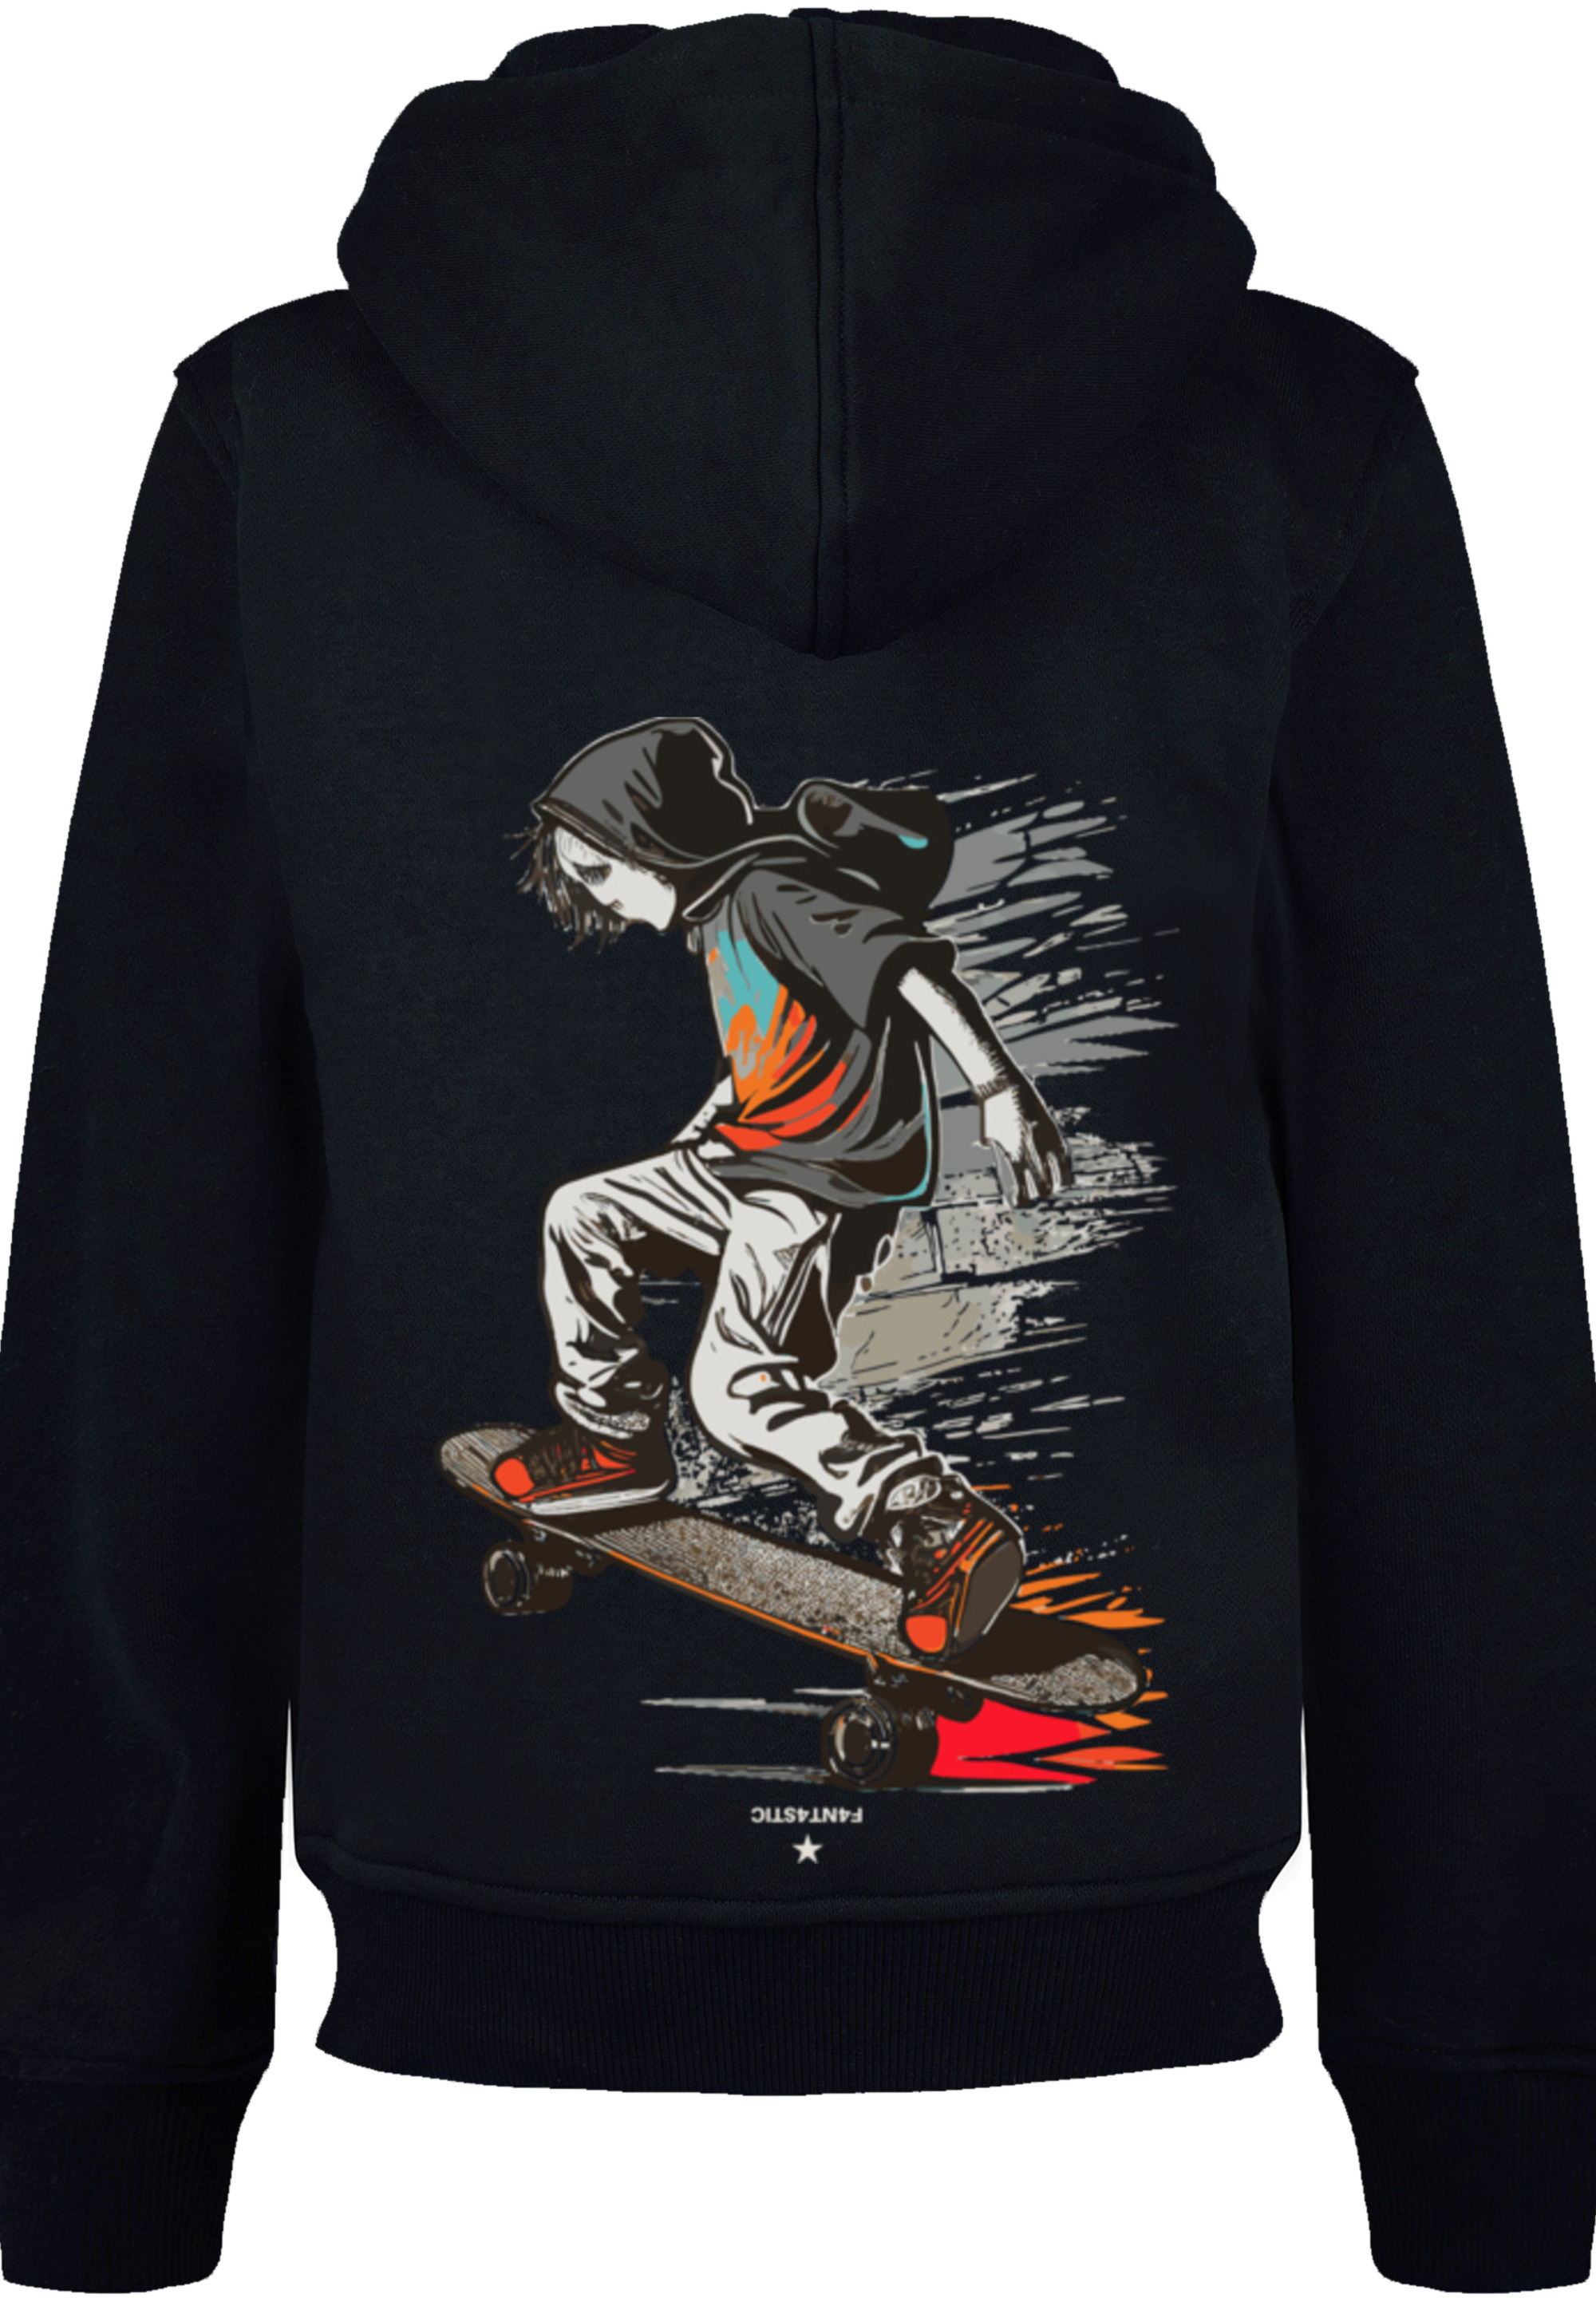 Пуловер F4NT4STIC Hoodie Skateboarder, черный